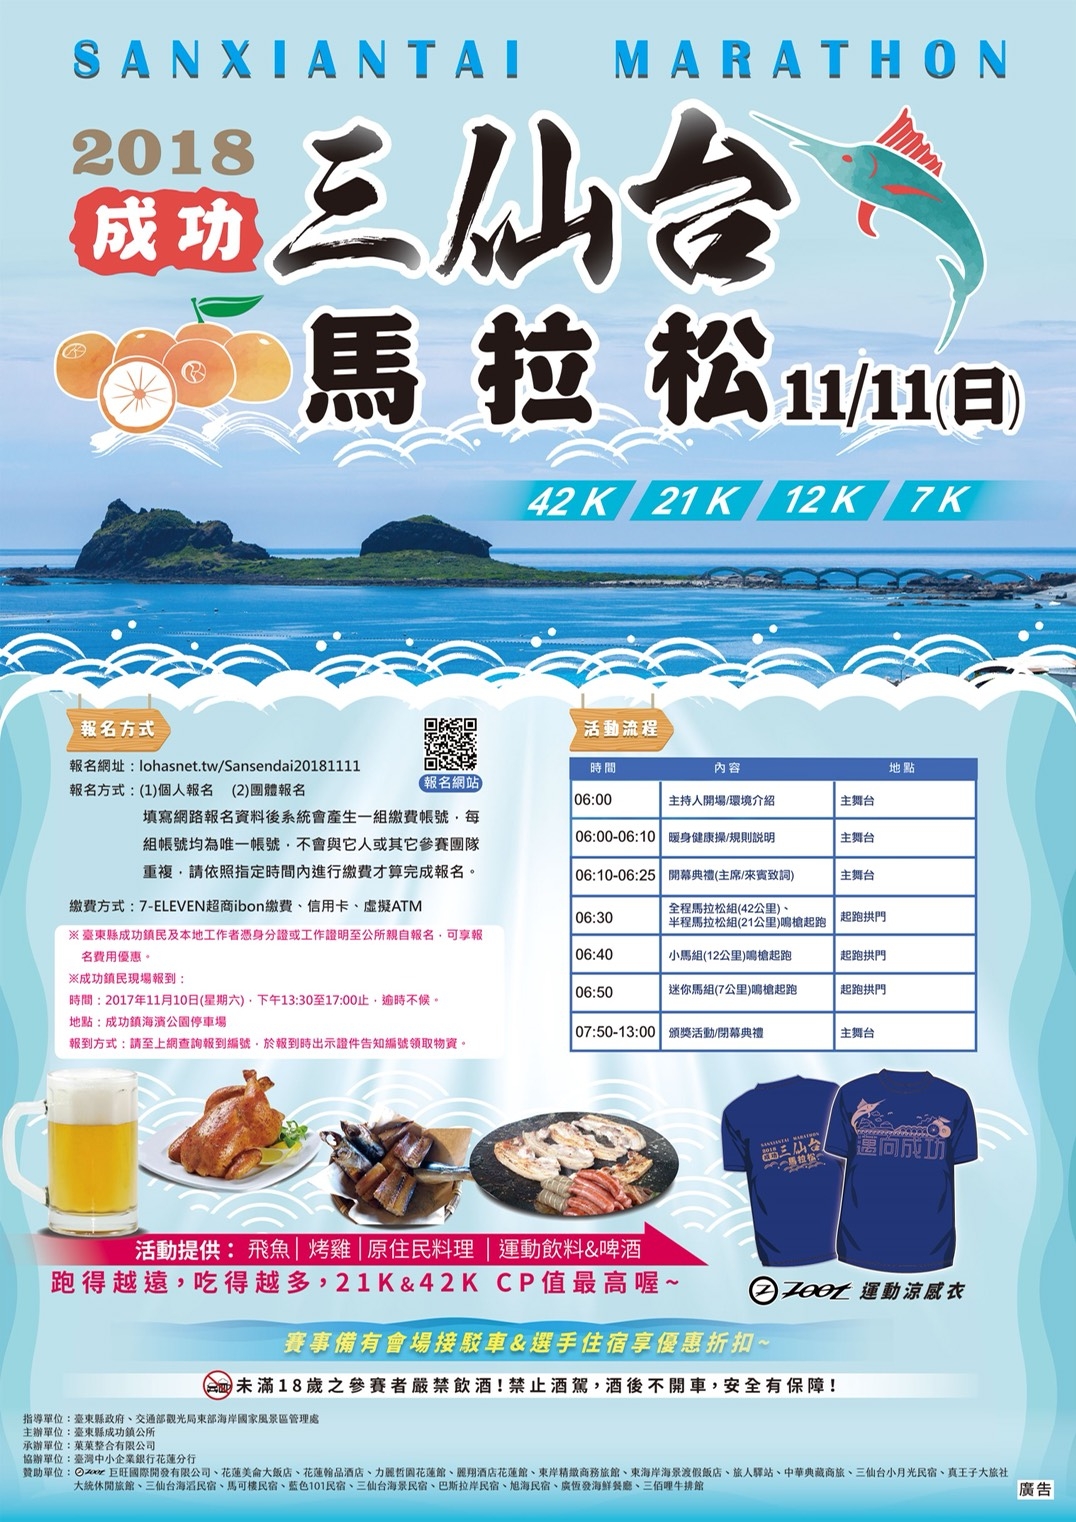 臺東2018成功三仙台馬拉松活動訂於107年11月11日(星期日)假臺東縣成功鎮海濱公園辦理，報名期間即日起至9月30日止。|